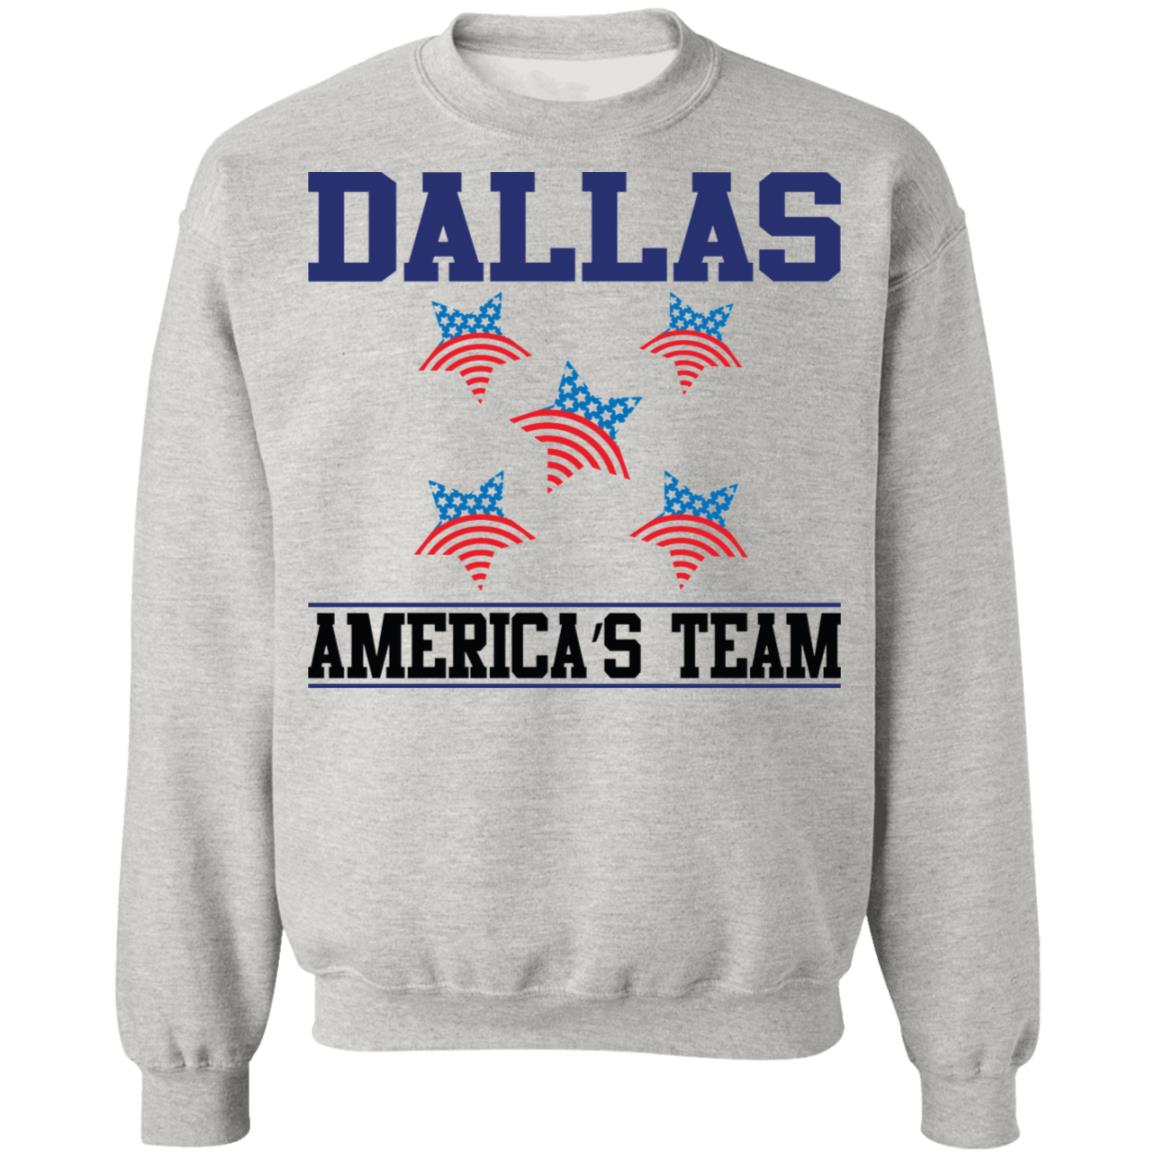 Dallas (AT)Pullover Sweatshirt